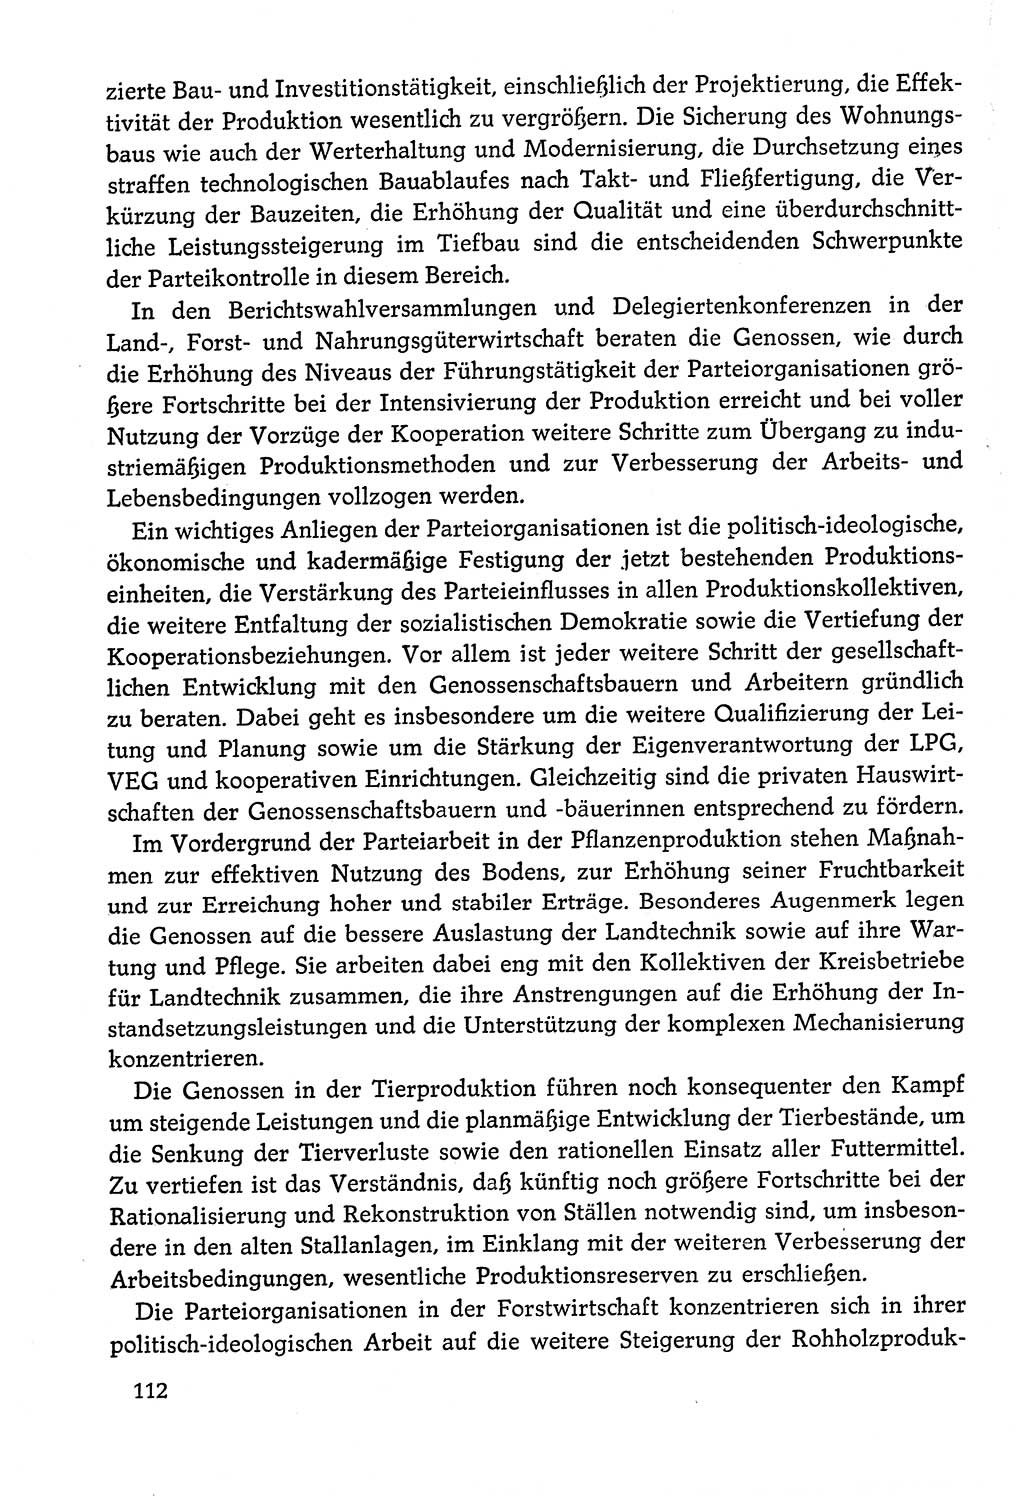 Dokumente der Sozialistischen Einheitspartei Deutschlands (SED) [Deutsche Demokratische Republik (DDR)] 1978-1979, Seite 112 (Dok. SED DDR 1978-1979, S. 112)